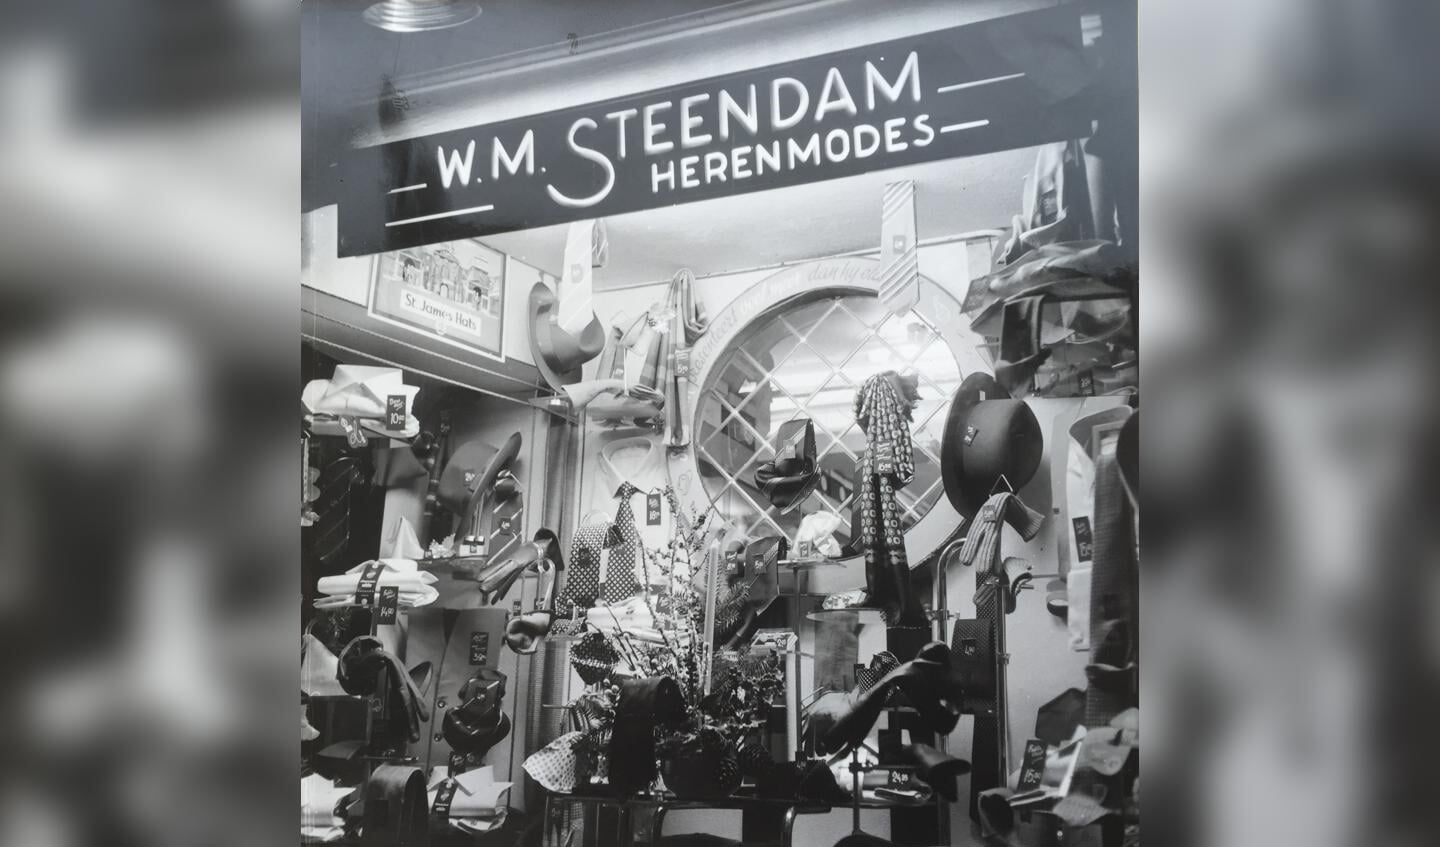 De etalage van W.M. Steendam Herenmodes in 1950